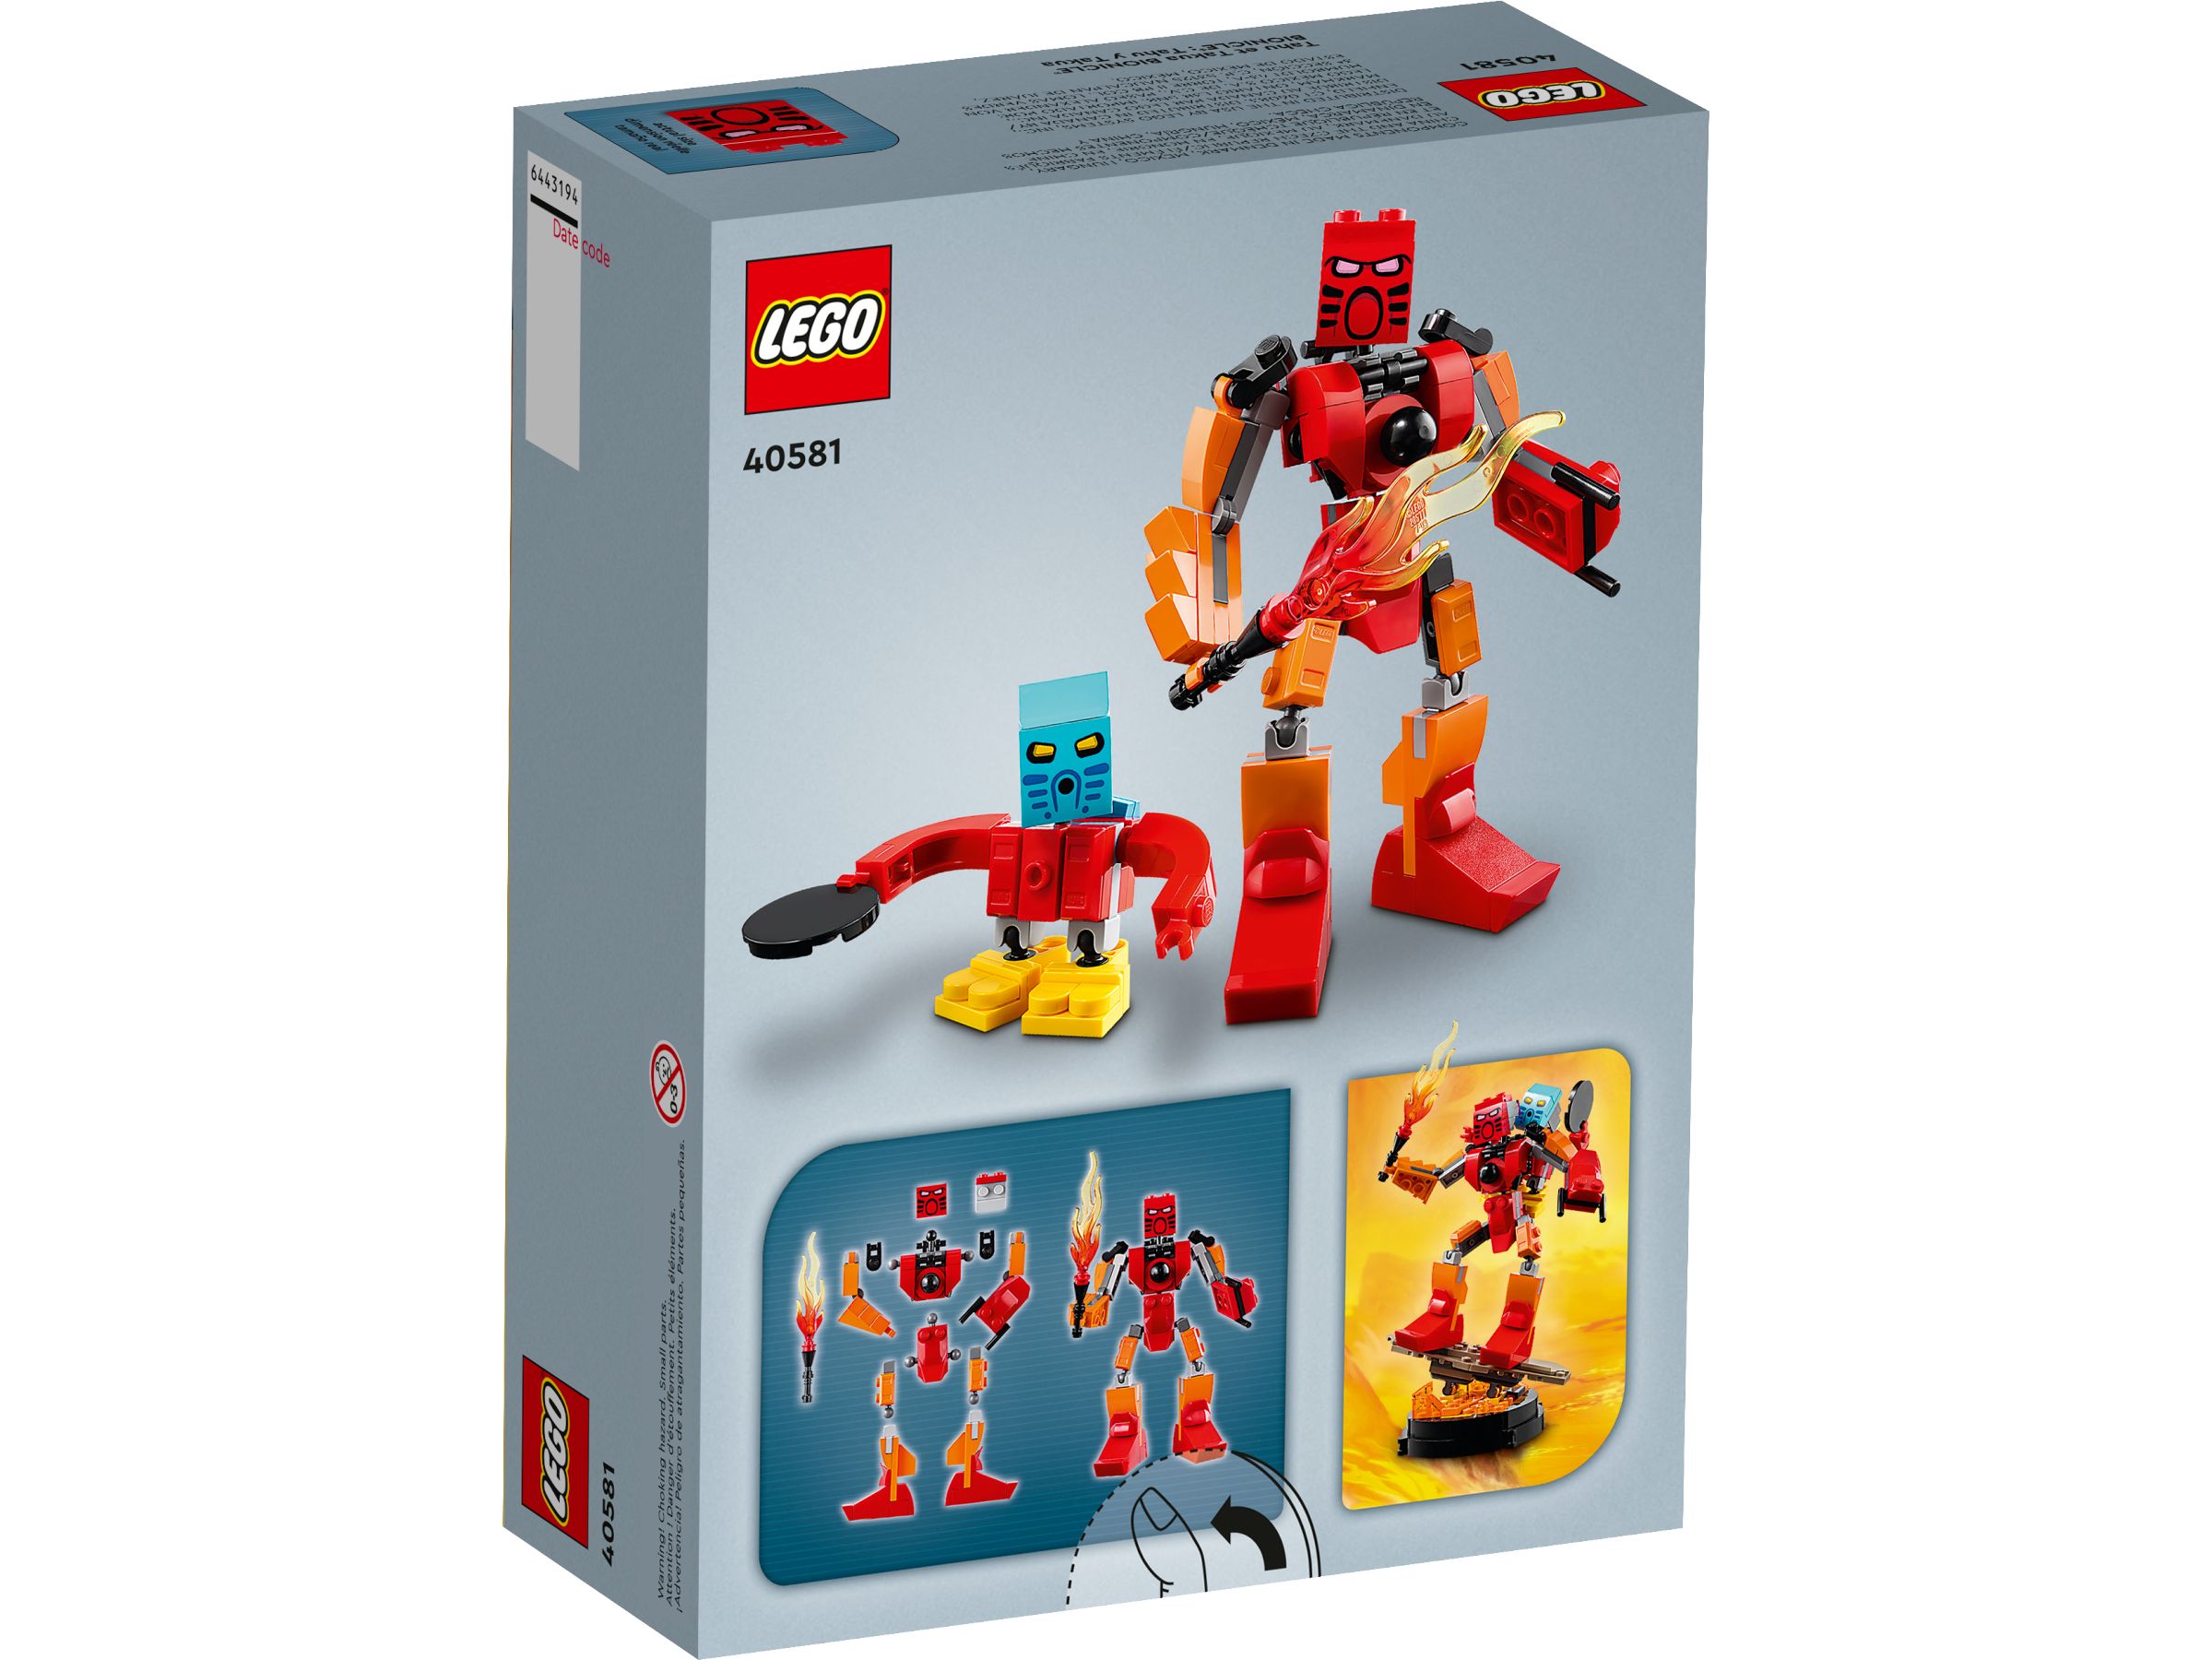 LEGO Bionicle 40581 Bionicle Tahu & Takua GWP LEGO_40581_alt2.jpg